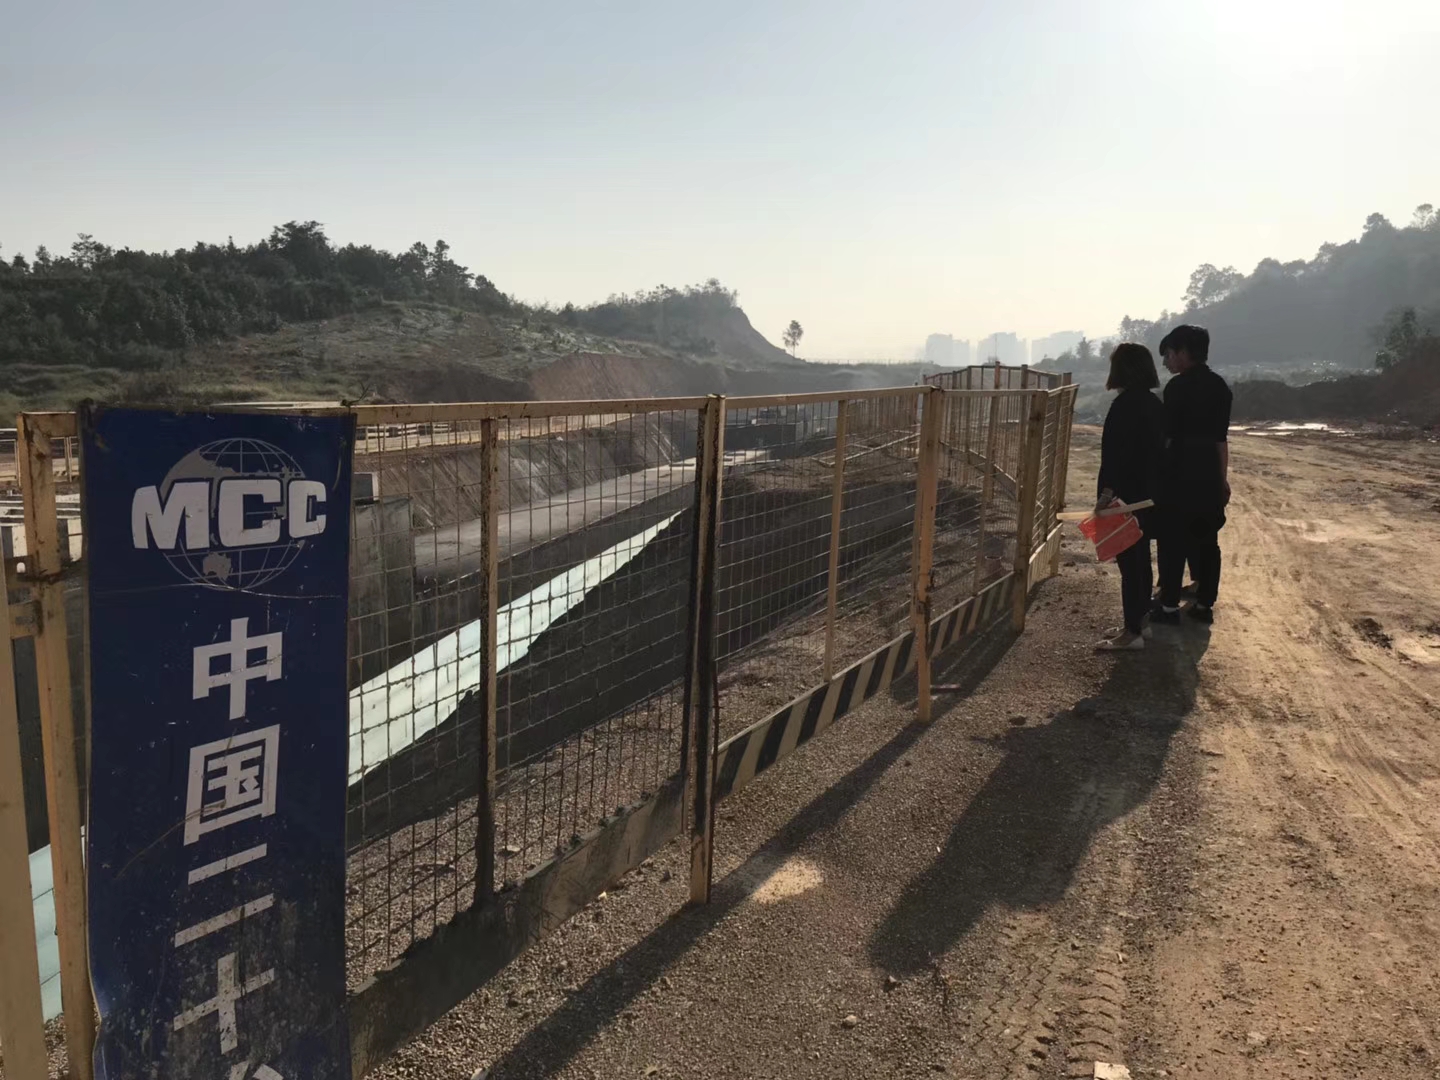 广州艺佰涂科技有限公司 APP高聚物改性沥青防水涂料施工工序